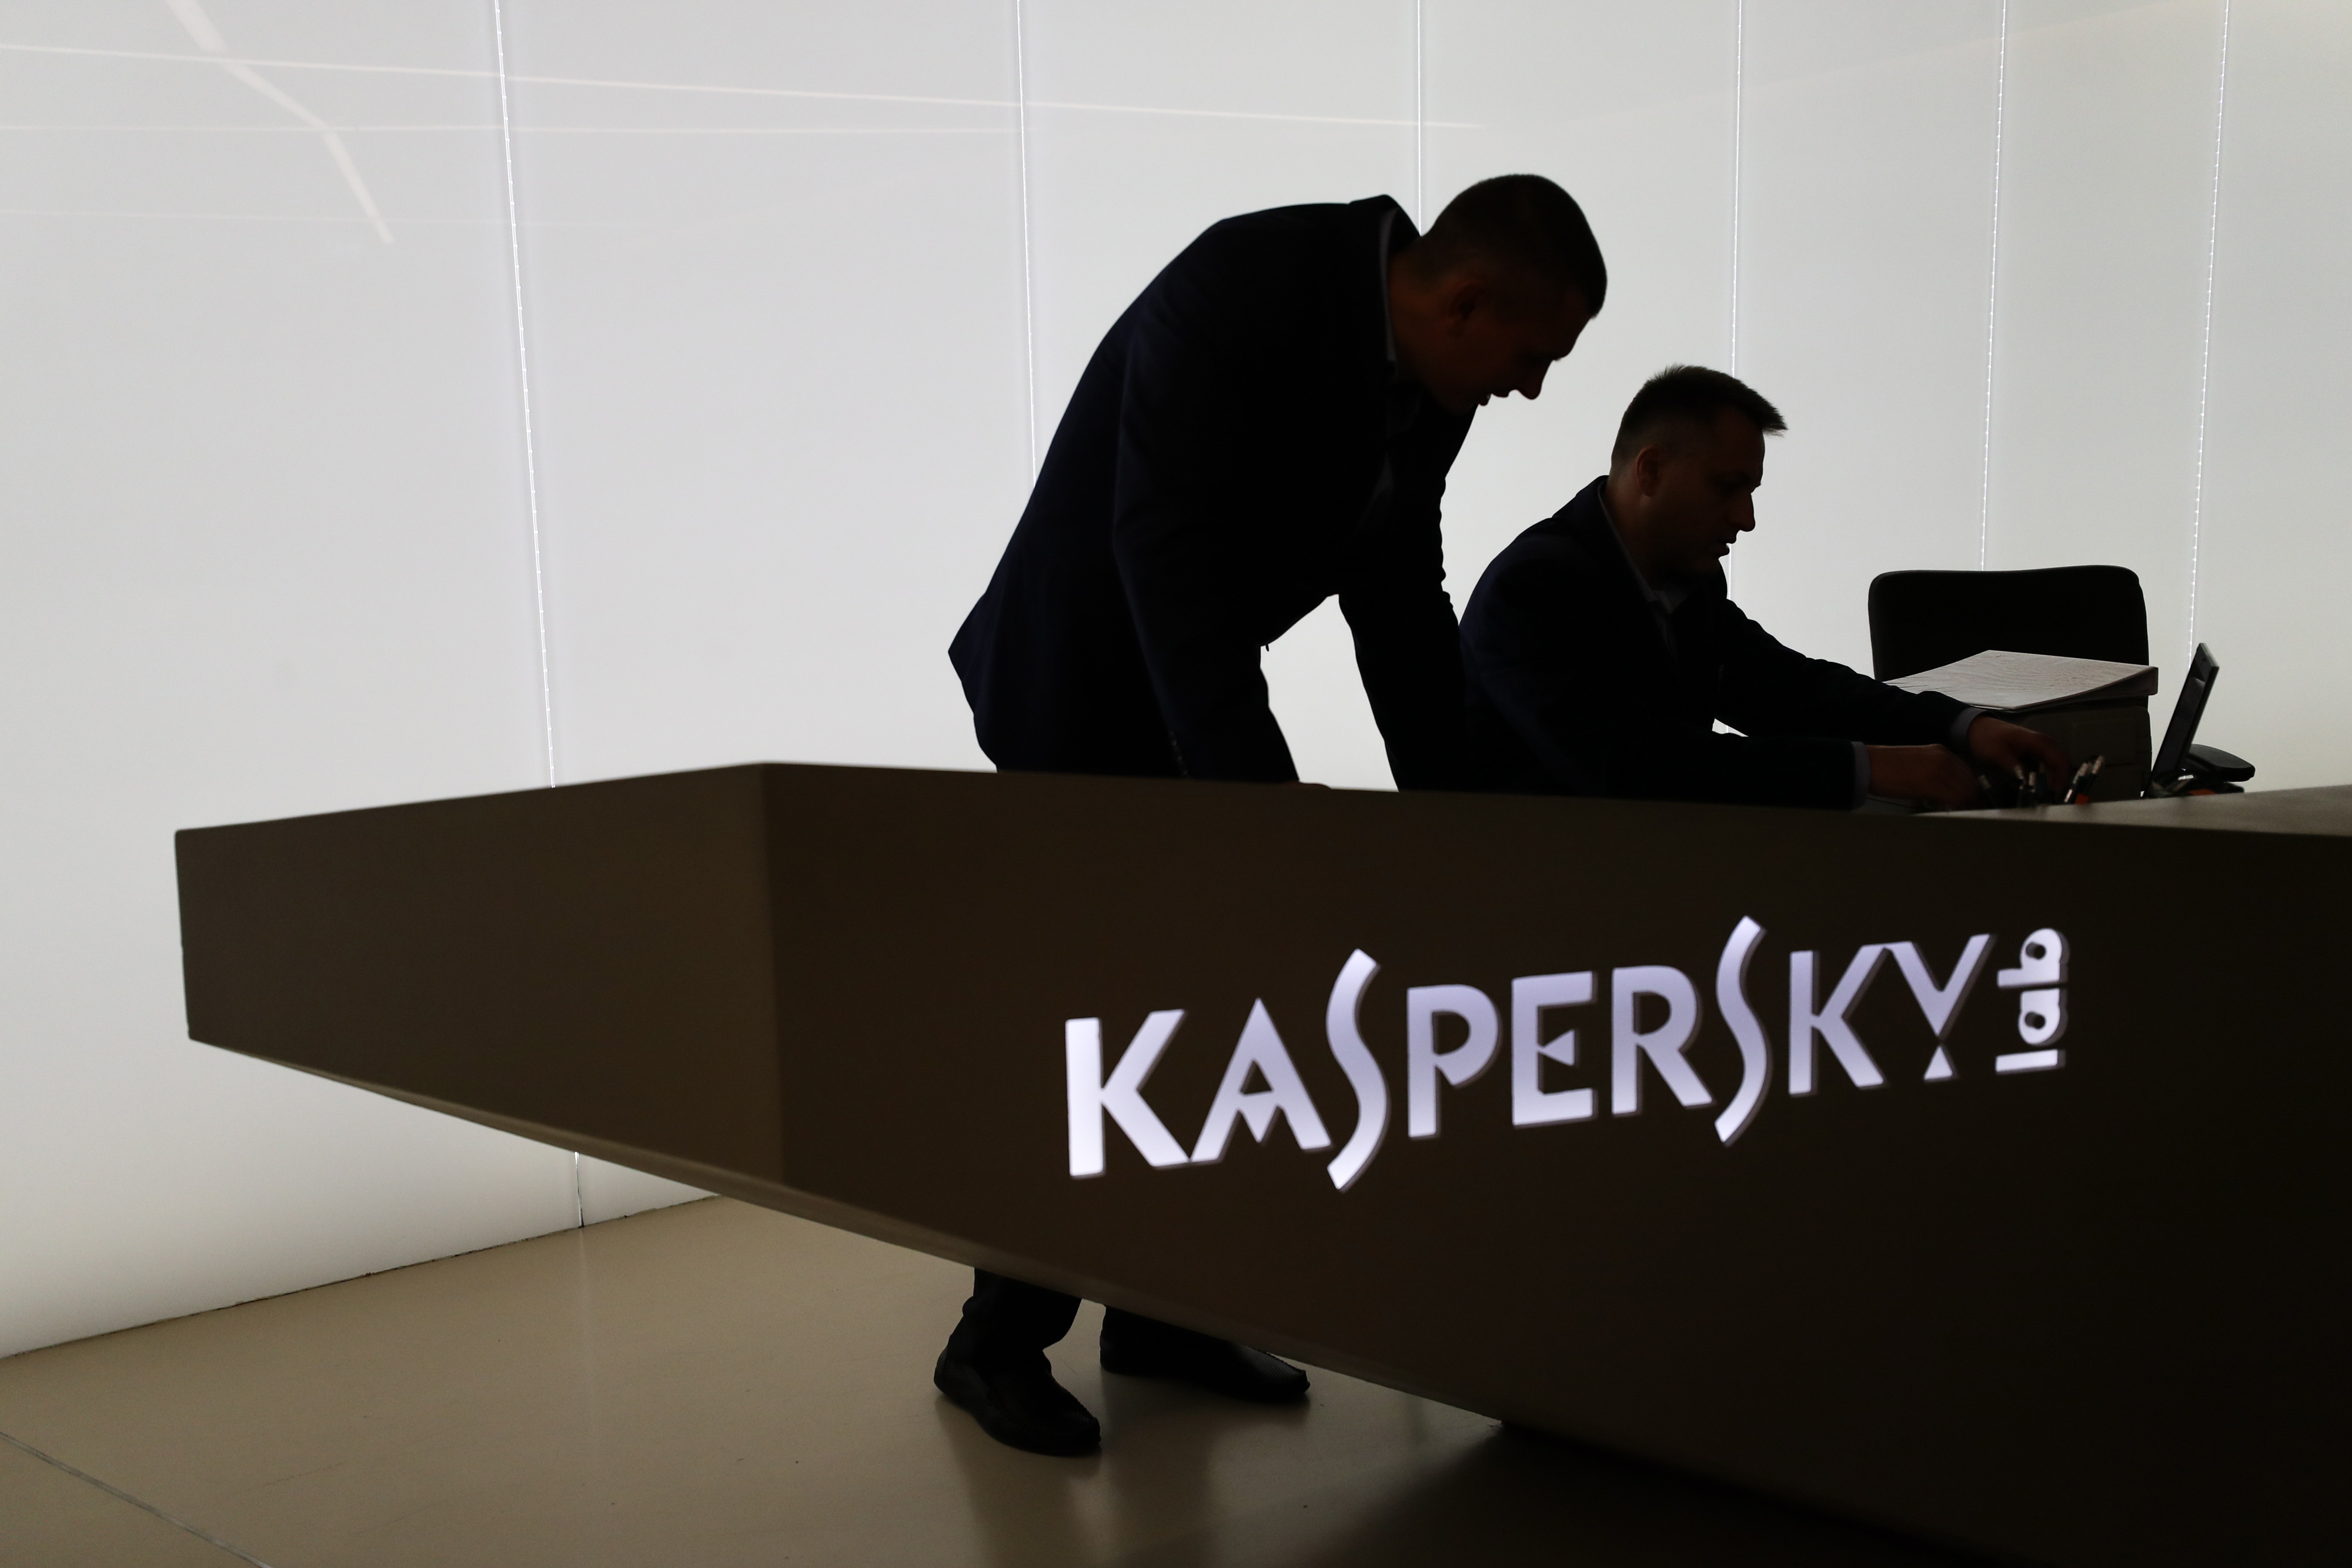 Kaspersky casusluk iddialarına yanıt verdi